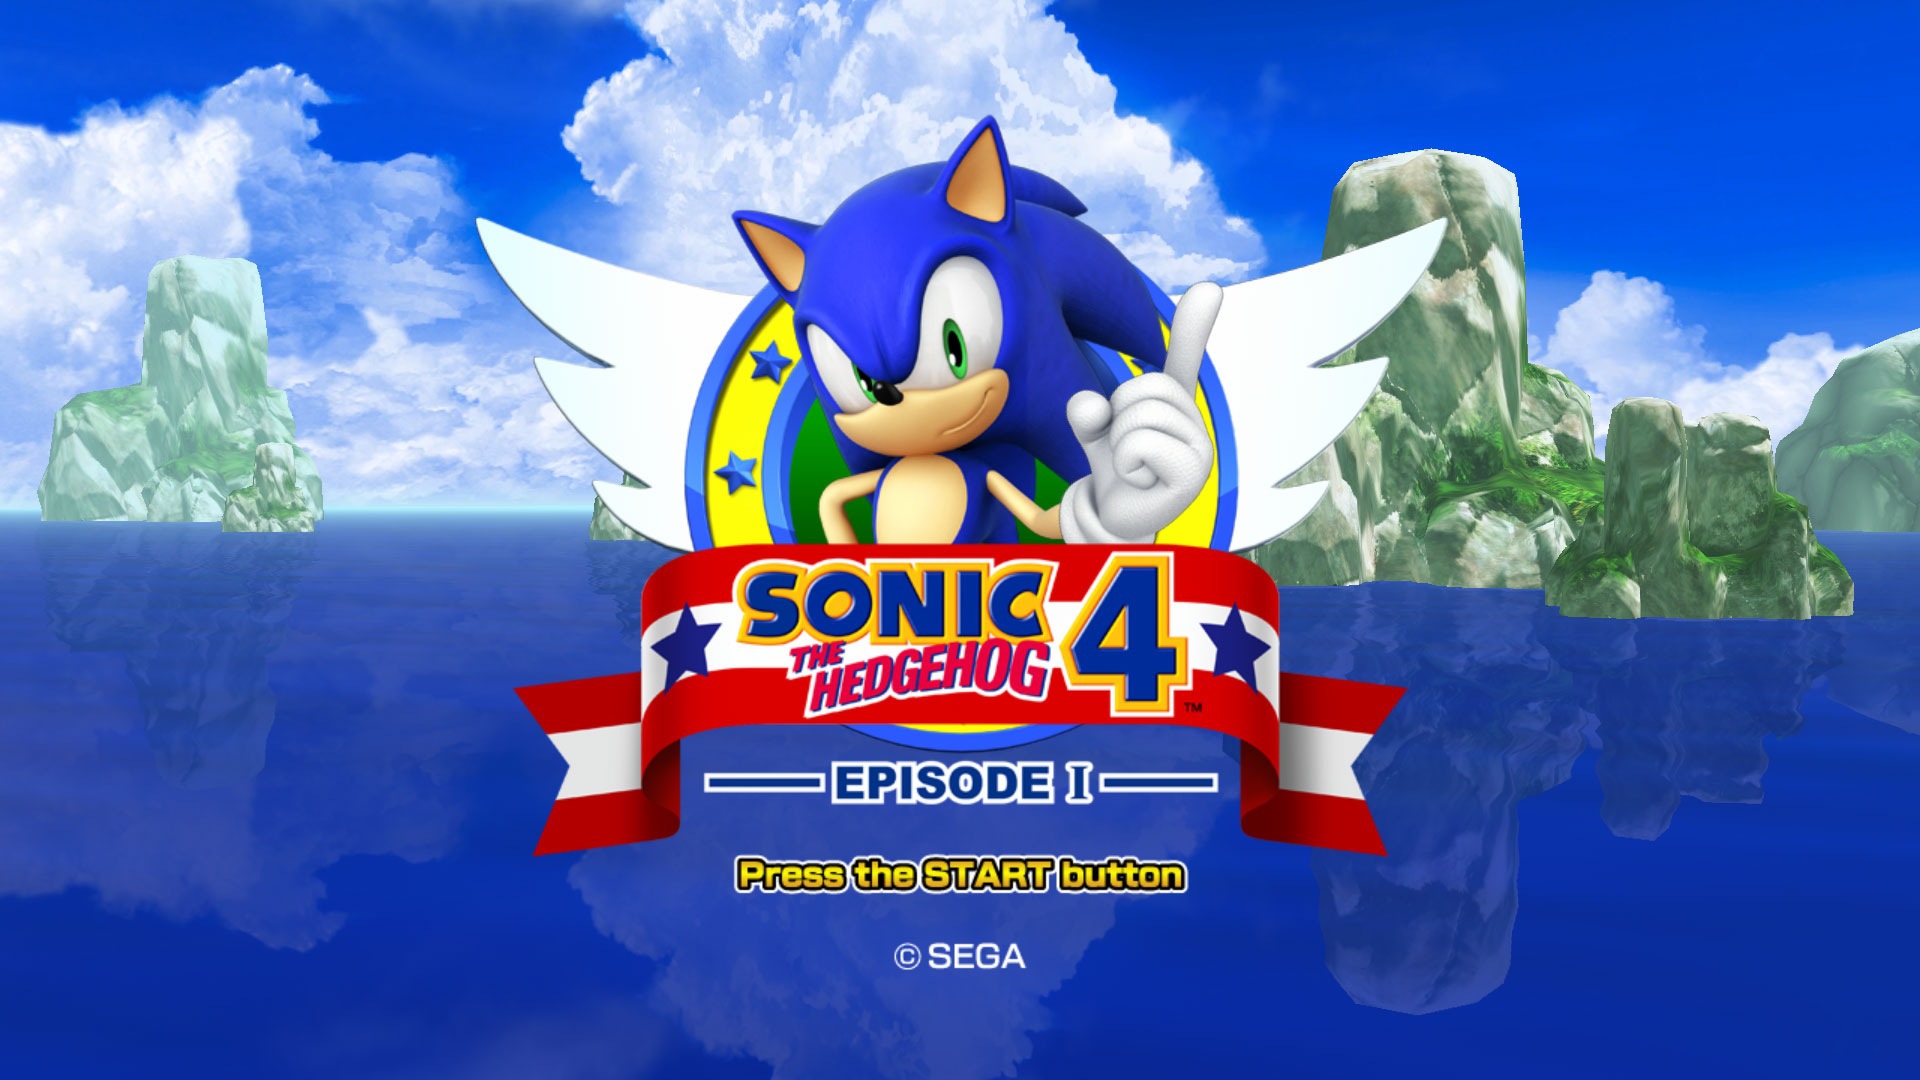 Descargar fondos de escritorio de Sonic The Hedgehog 4: Episodio I HD